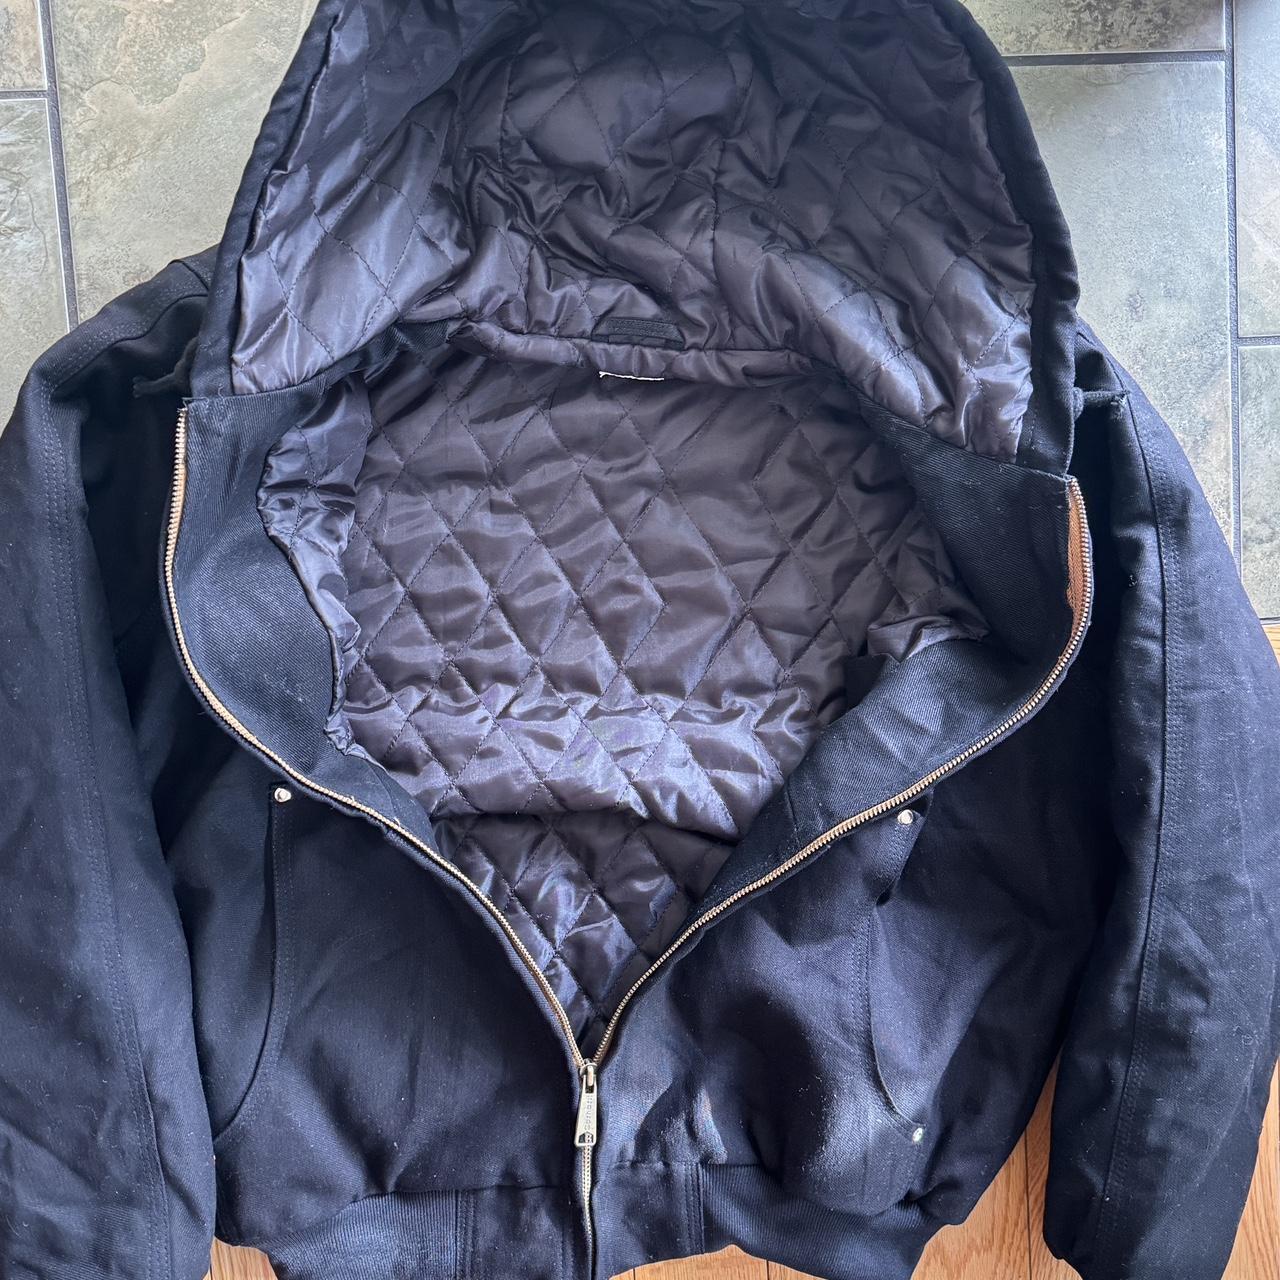 Carhartt Hooded Jacket - Medium Only 4 Jackets... - Depop